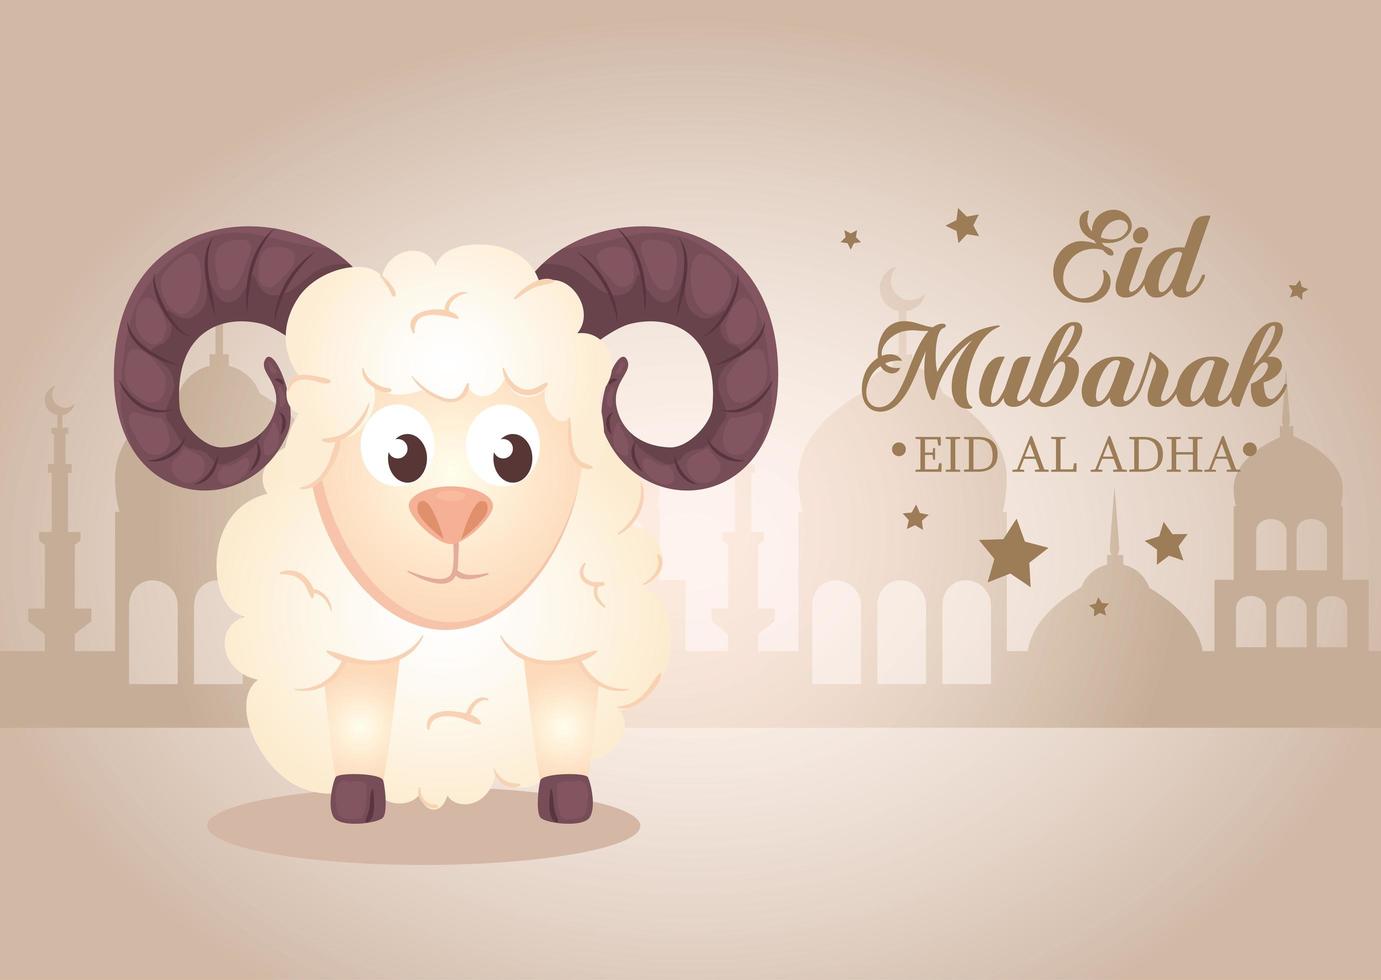 célébration eid al adha mubarak avec des moutons vecteur